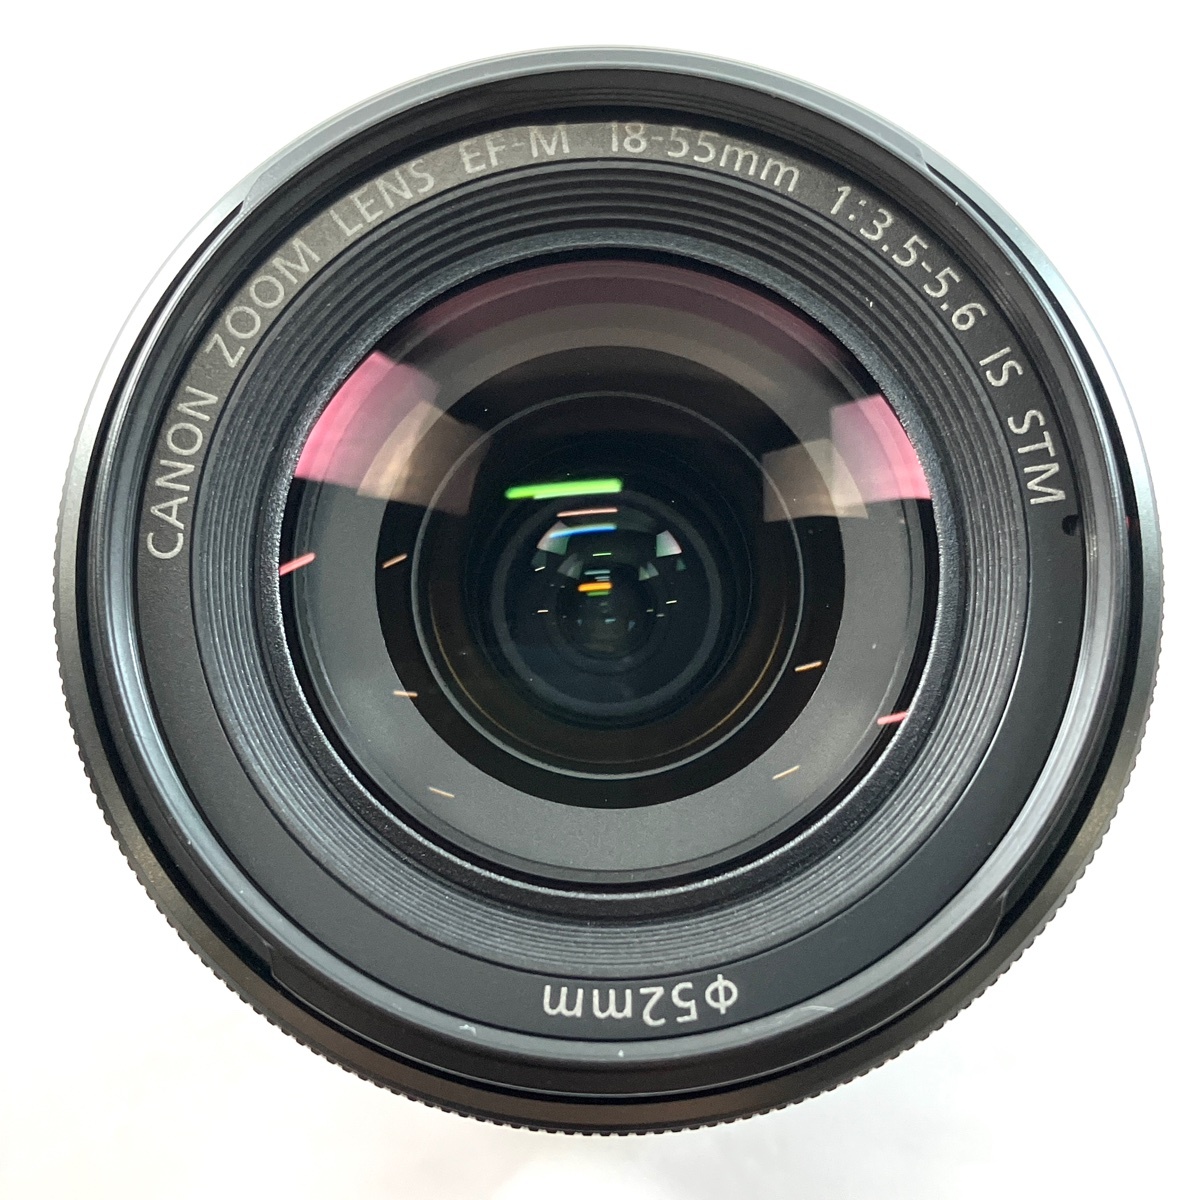 キヤノン Canon EOS M レンズキット ブラック デジタル ミラーレス 一眼カメラ 【中古】_バイセル 31052_7